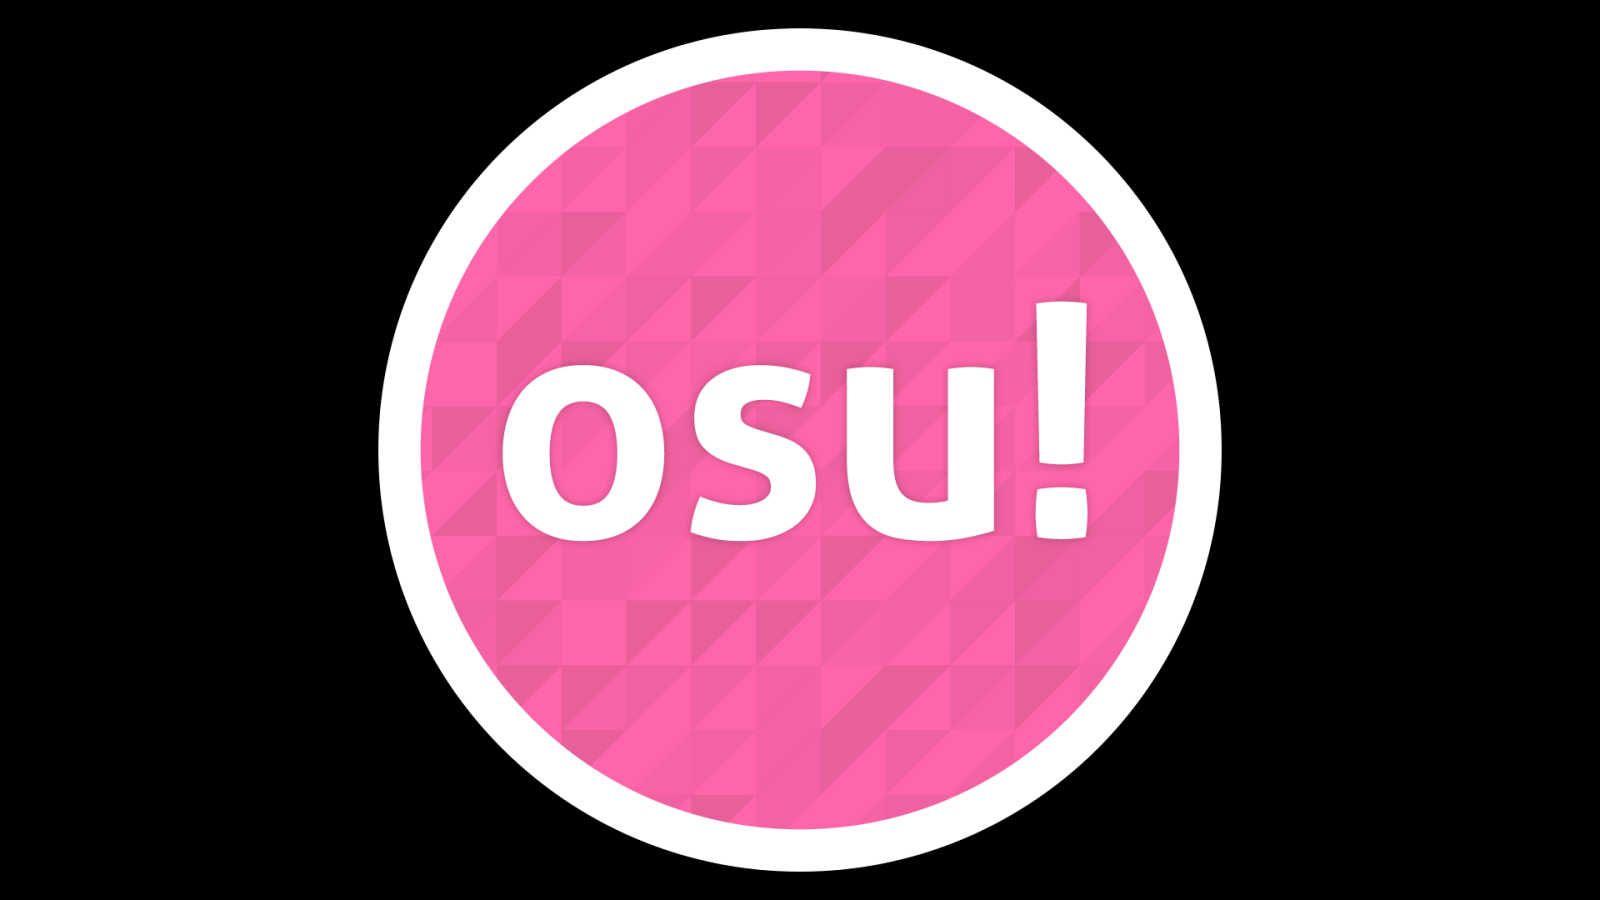 OSU Logo - Osu Logos